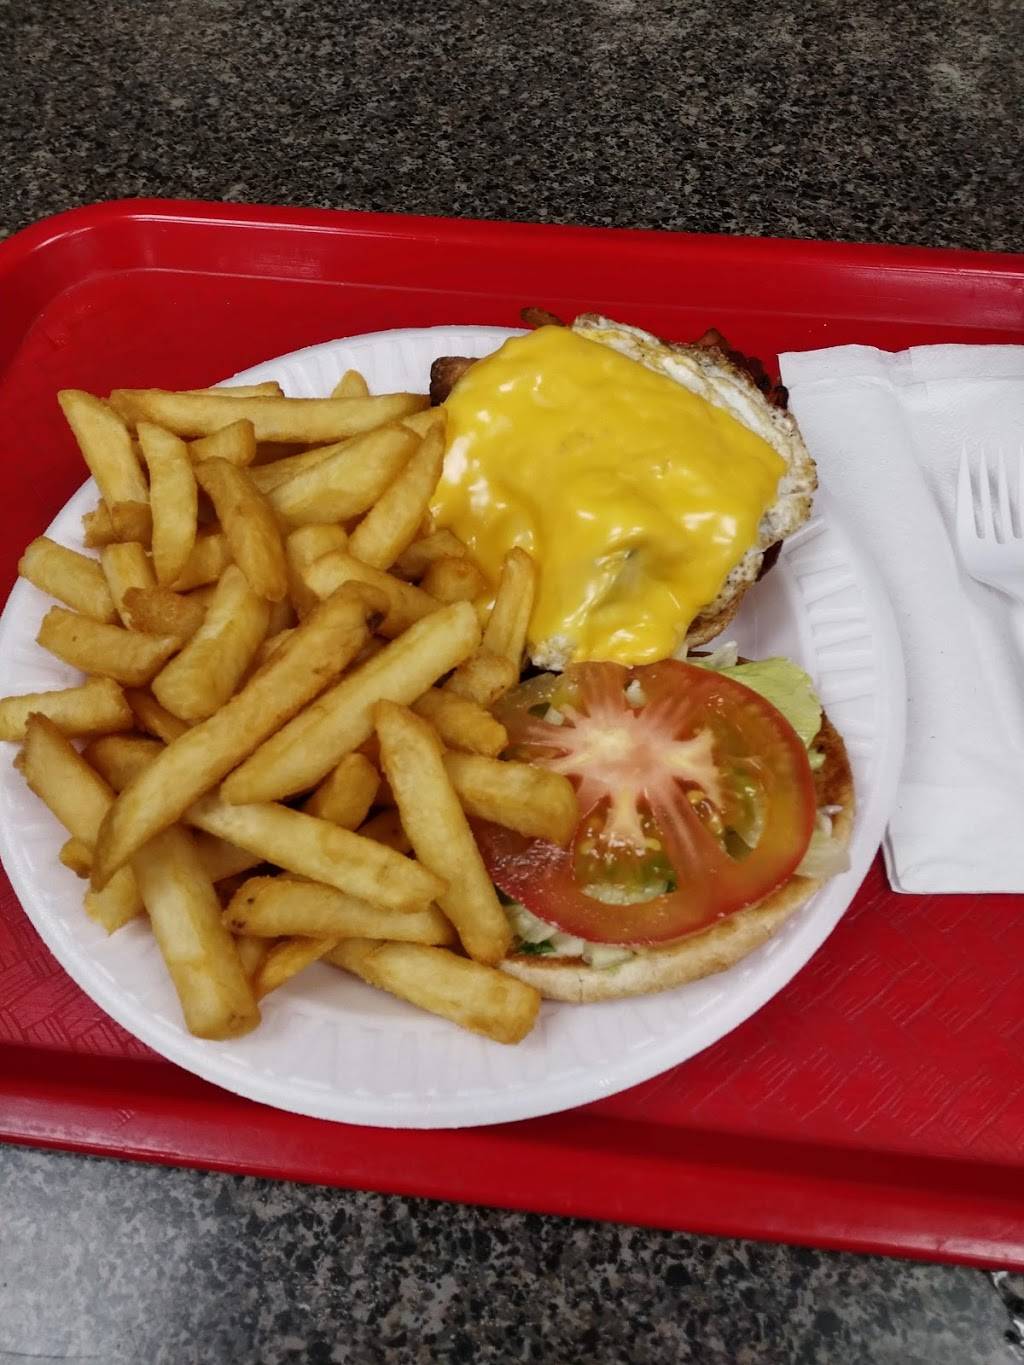 Jumbo Hamburgers | restaurant | 274 W 145th St, New York, NY 10039, USA | 2124915444 OR +1 212-491-5444